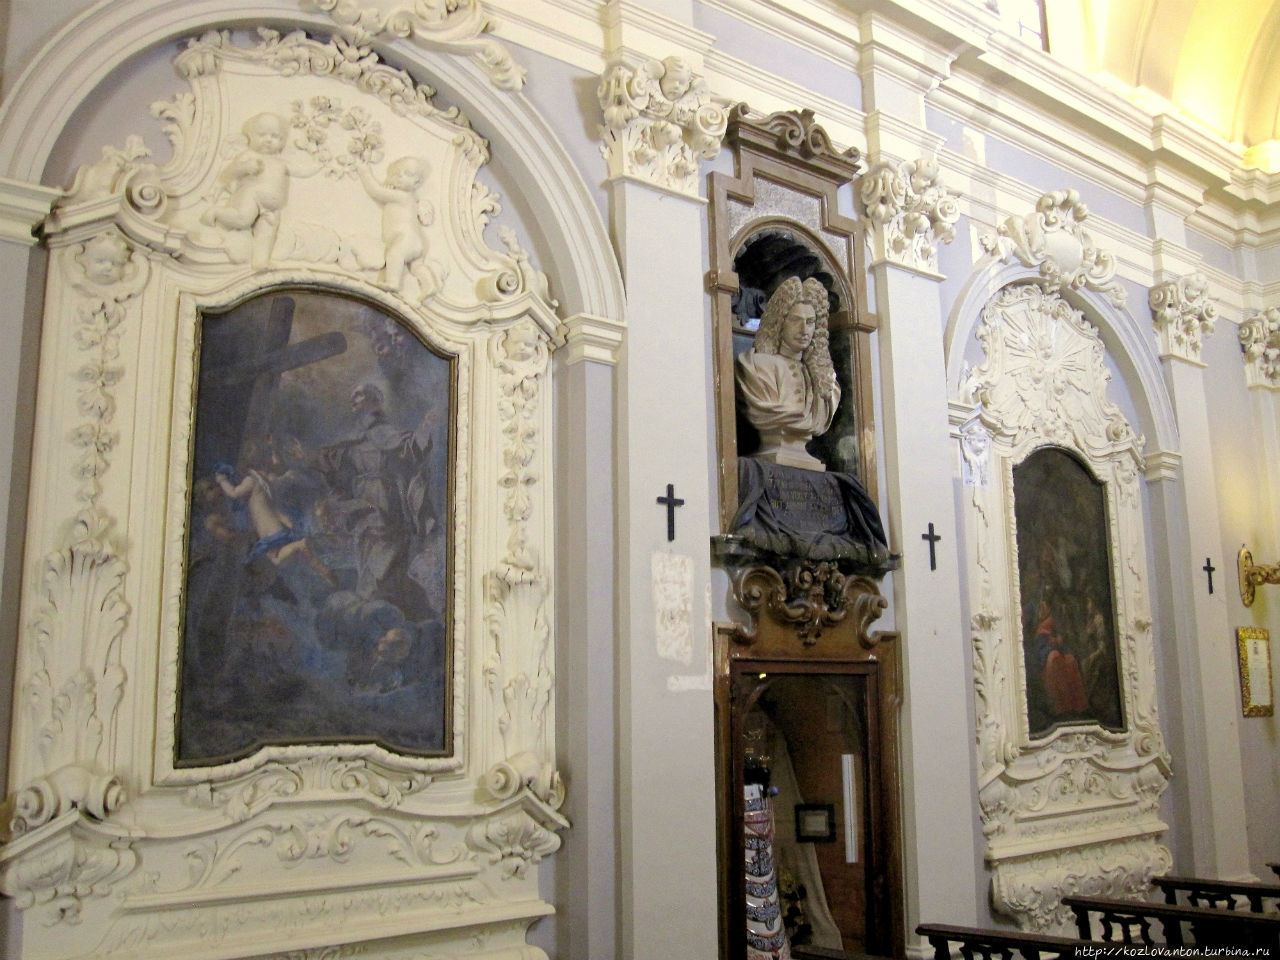 На левой стене часовни бюст Джованни Паоло Валлони, который в 1729 был избран капитаном-регентом республики, а также картины 